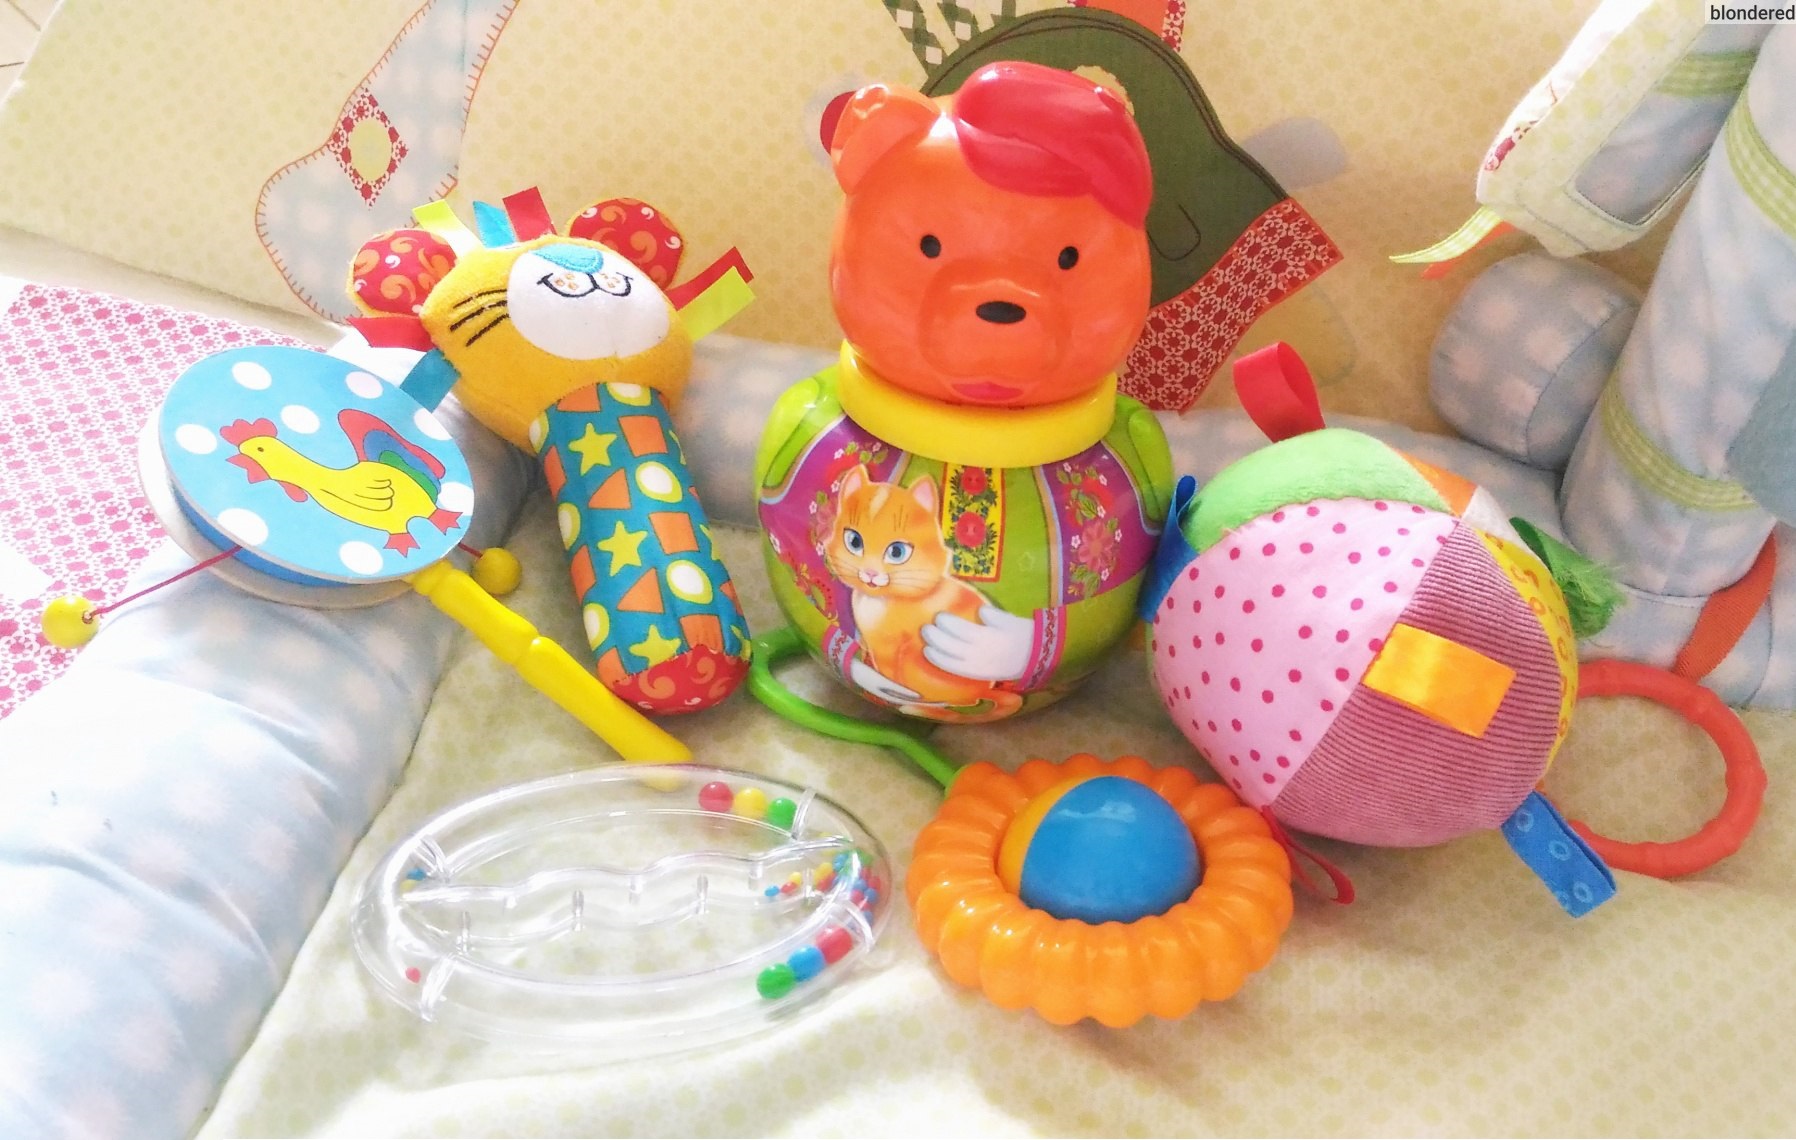 Брязкальця - перші іграшки малюка. Нехай вони будуть різними на дотик і звук, але яскравими і якісними. Фото: Фейсбук